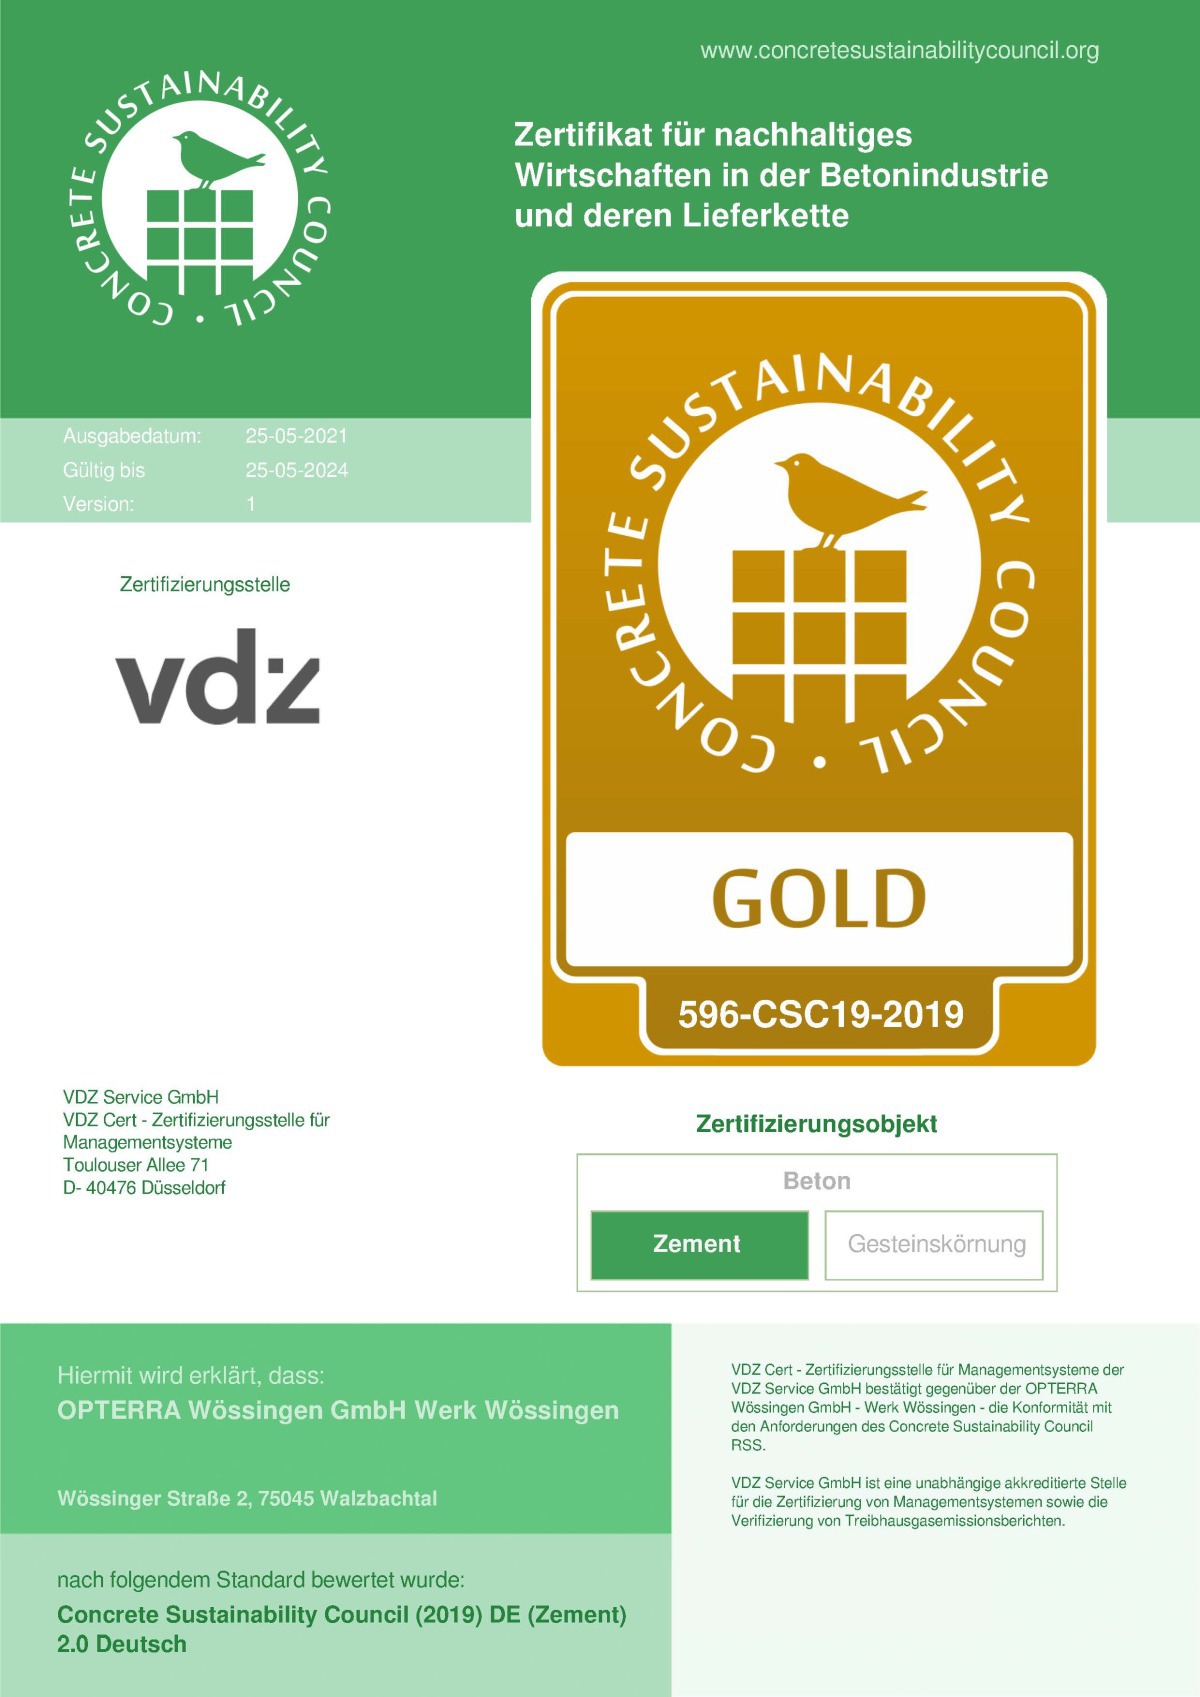 Das Opterra Werk in Wössingen ist CSC-zertifiziert und trägt das Gold-Siegel.